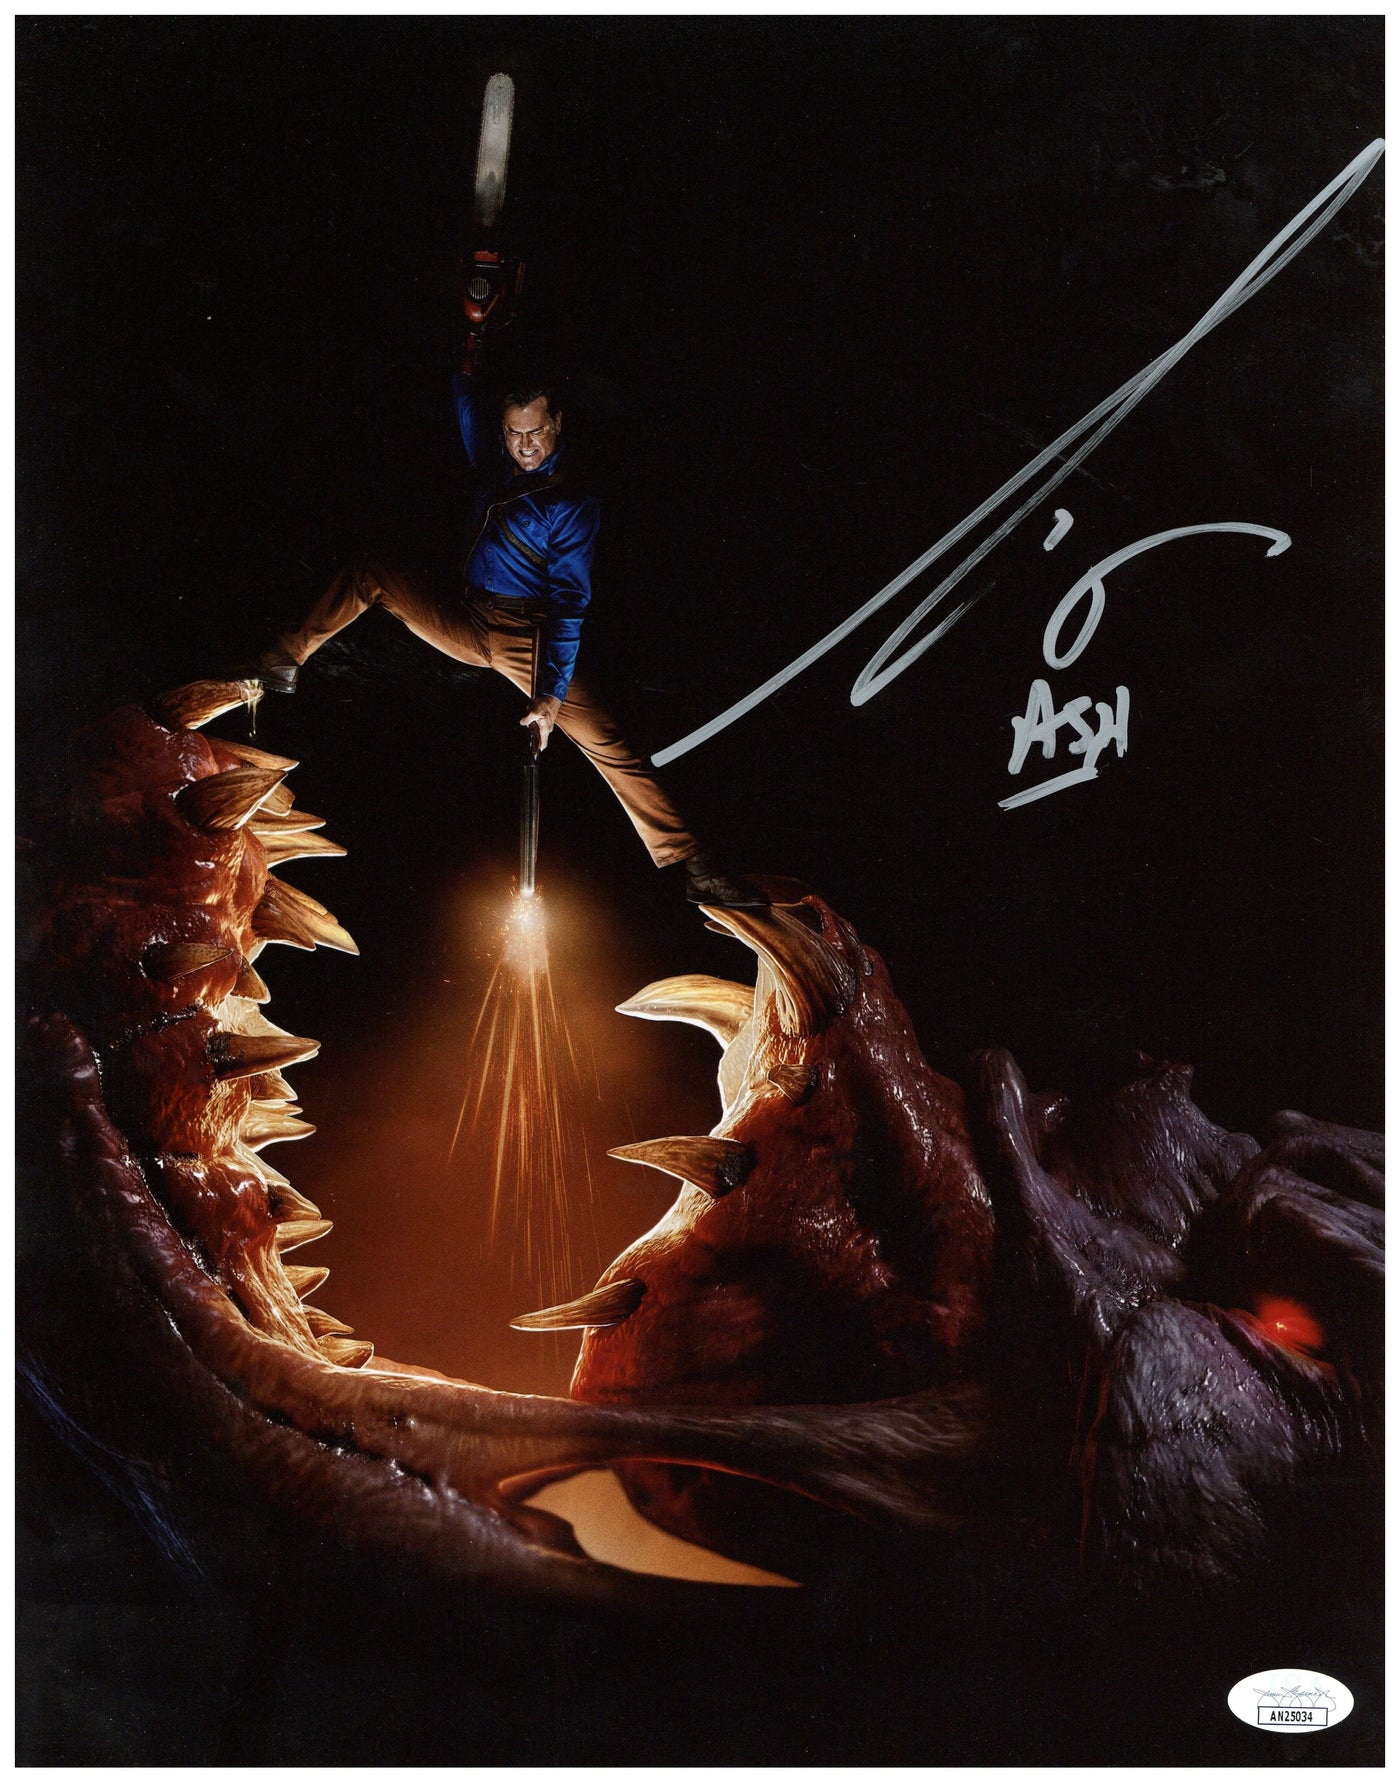 Bruce Campbell Signed 11x14 Photo Ash vs Evil Dead Authentic Autographed JSA COA 3